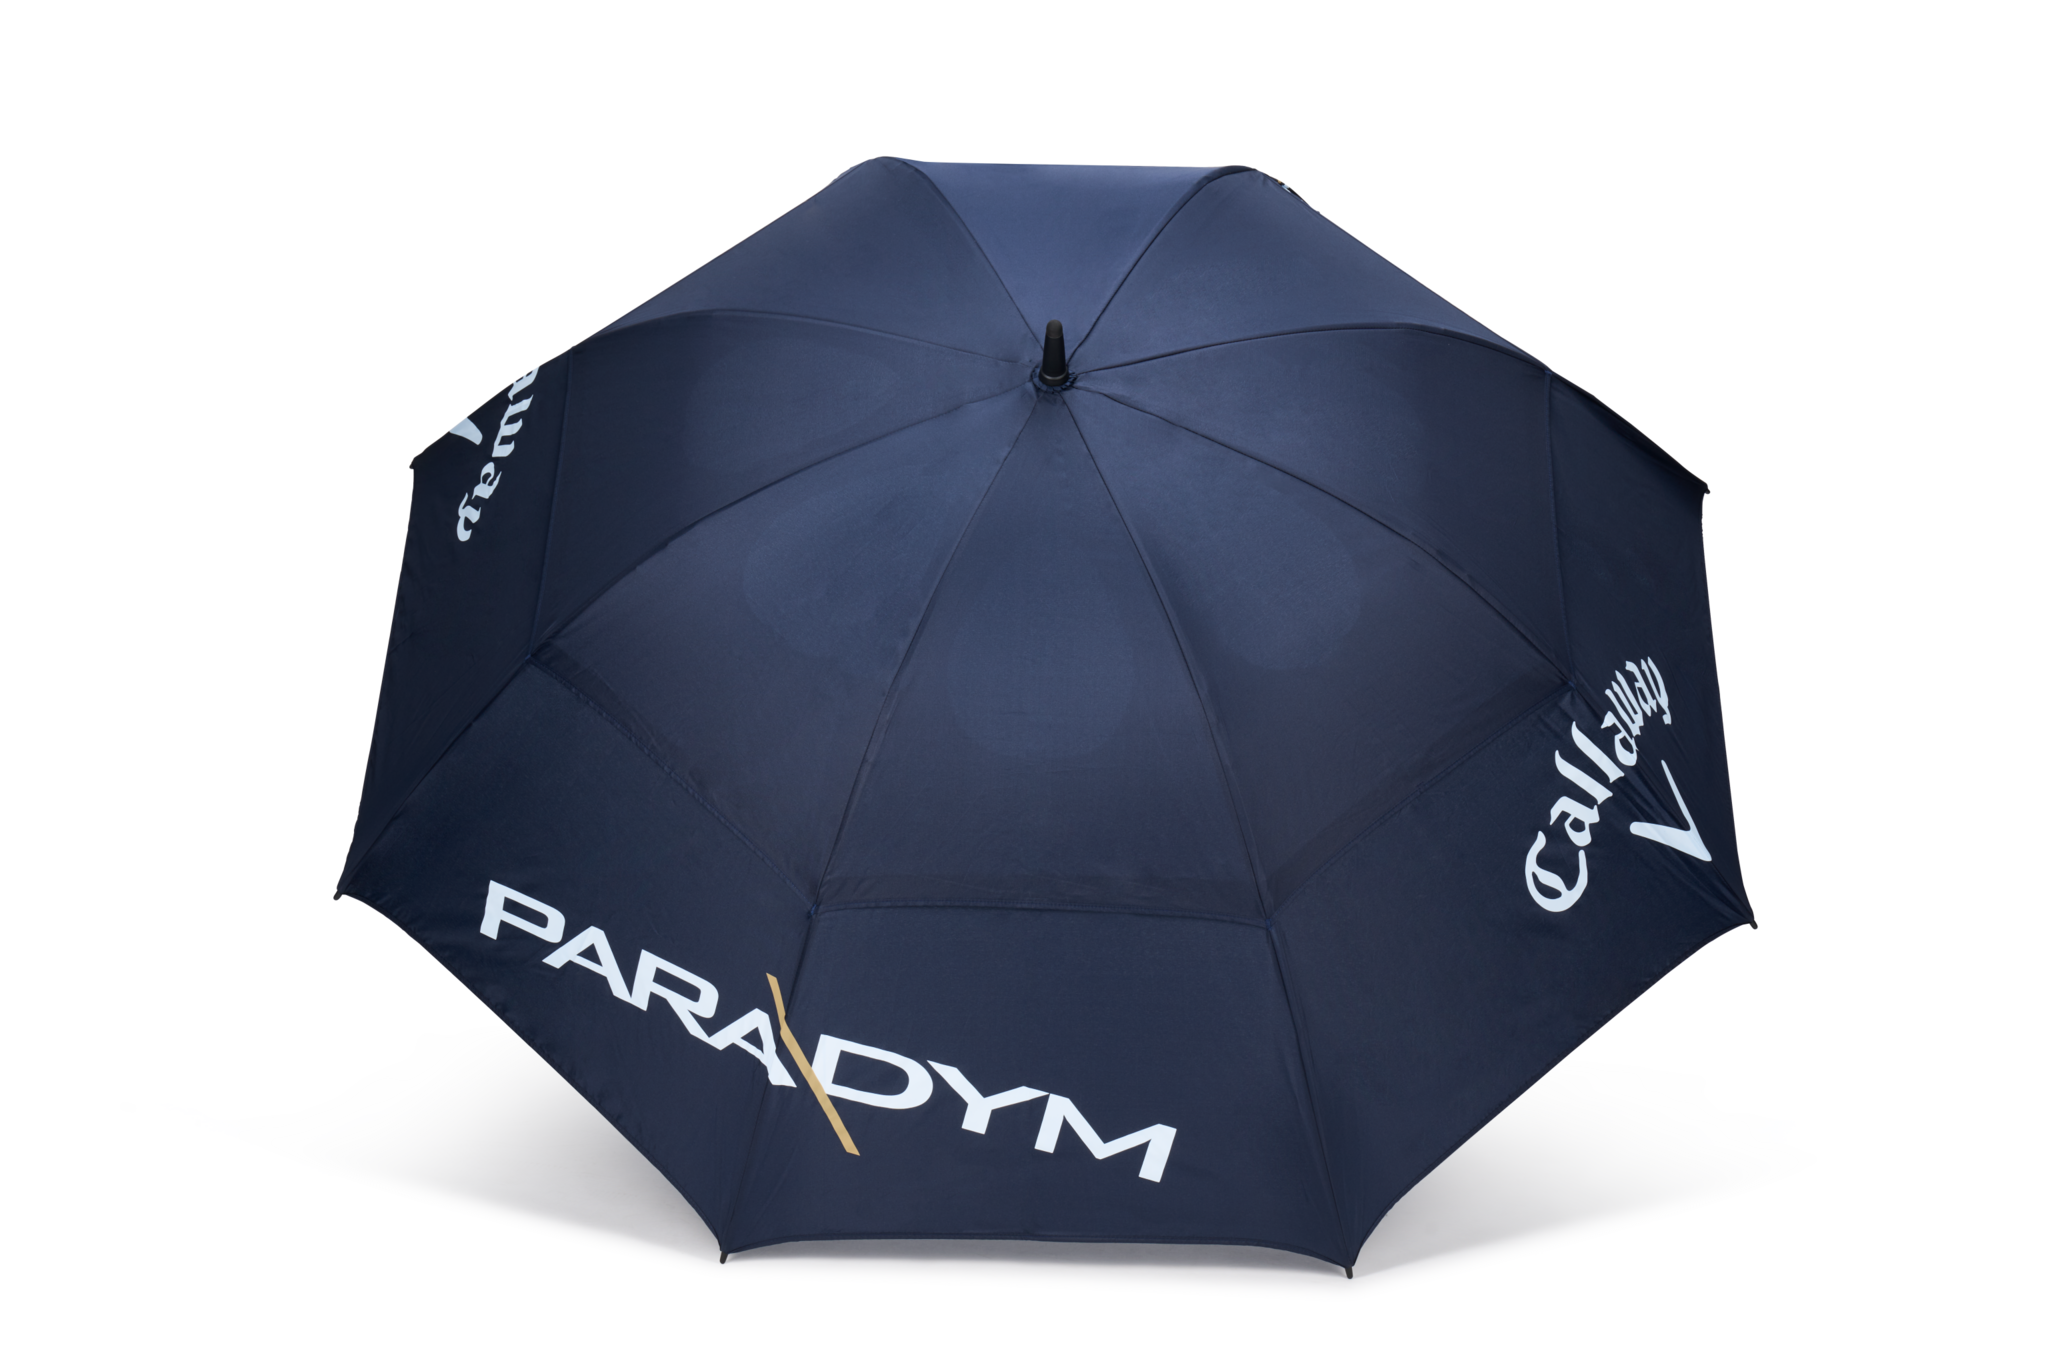 Callaway Paradym Umbrella